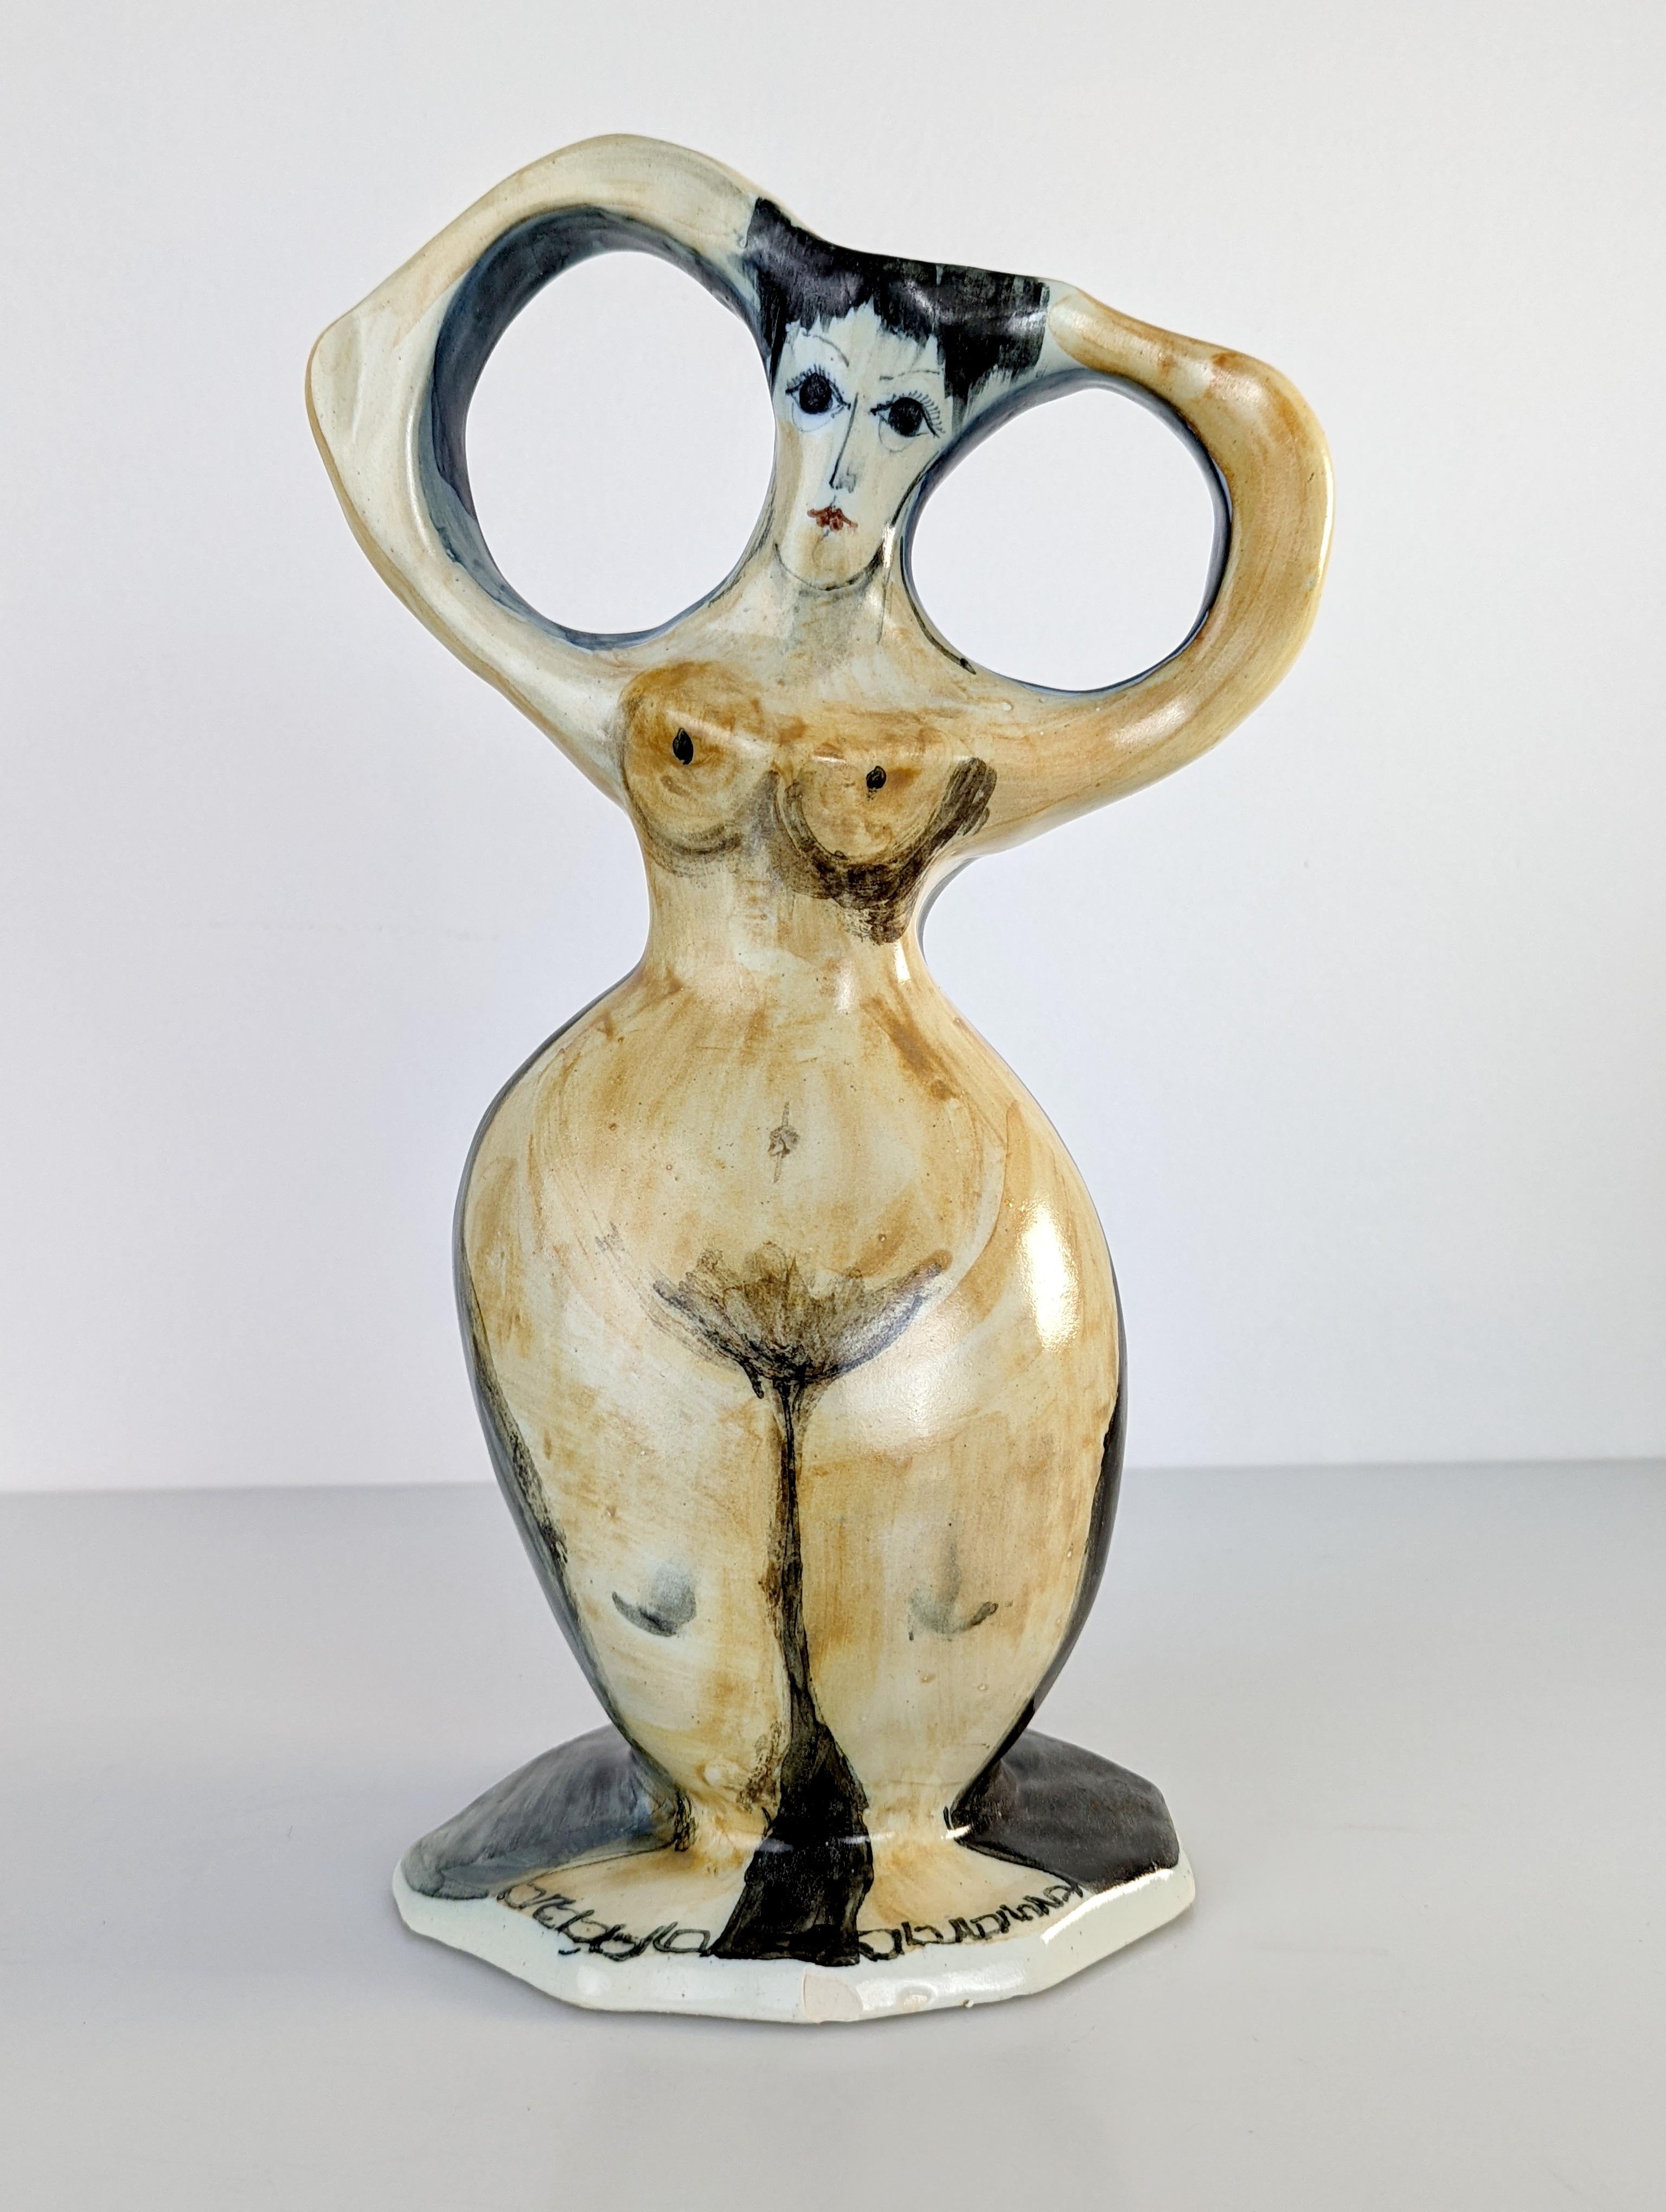 Extraordinaire pièce figurative en céramique qui représente une femme nue avec des volumes vraiment merveilleux et des traits fantastiques reflétant la grande habileté et le talent de l'artiste, jusqu'à présent inconnu.